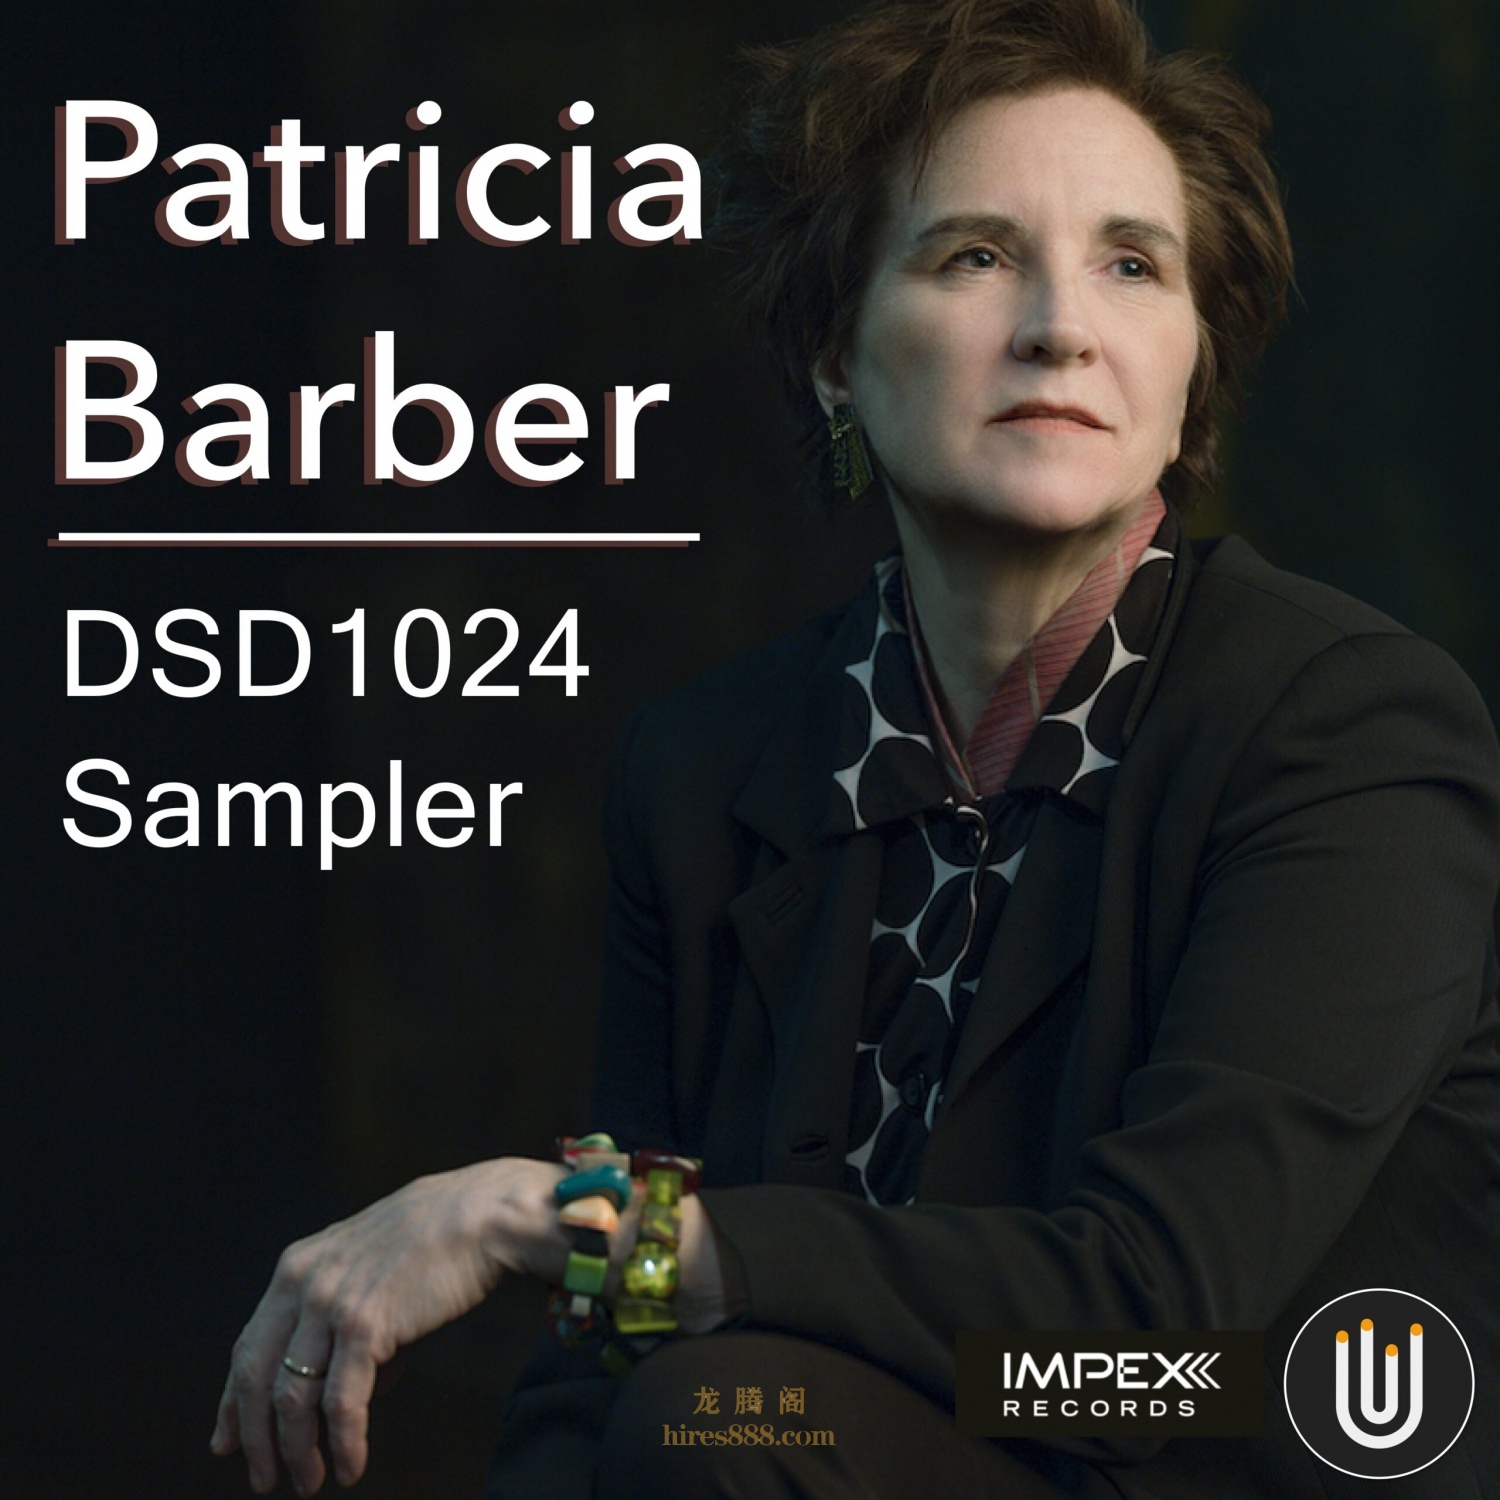 Patricia Barber DSD 1024 Sampler